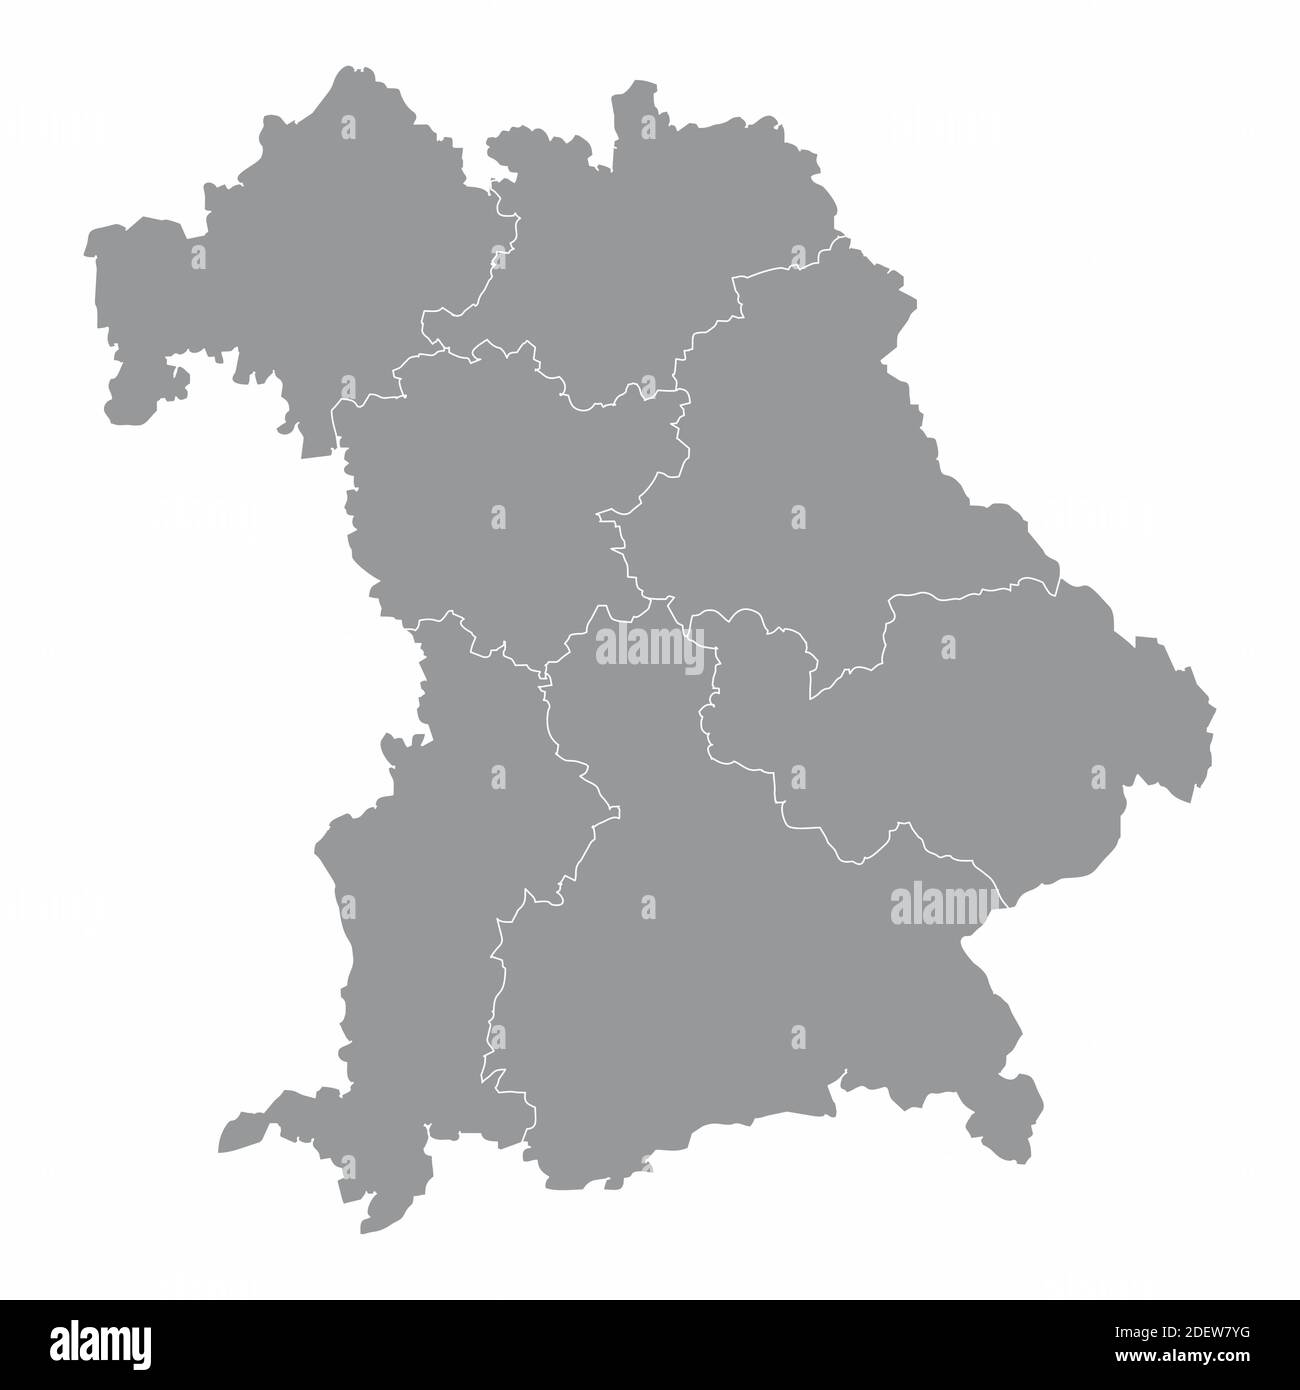 Bavaria regions map Stock Vector